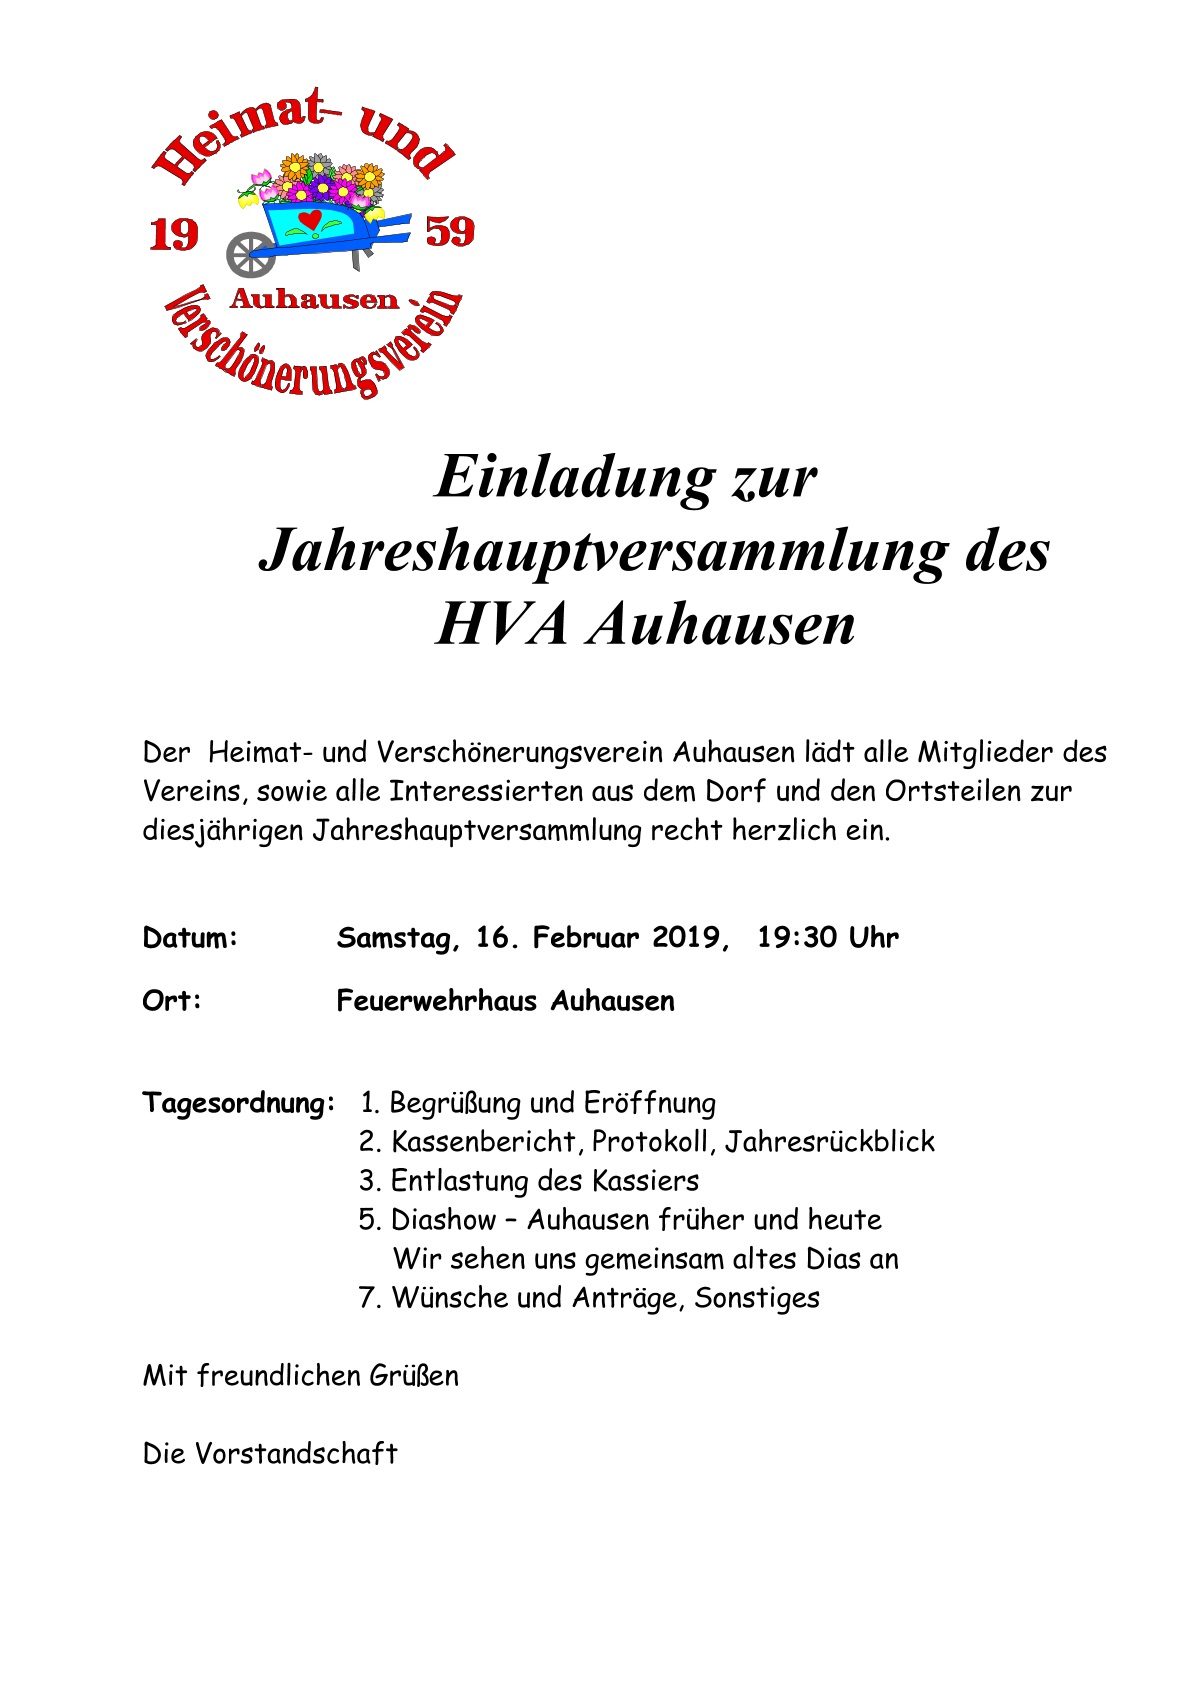 (c) HVA Auhausen - Einladung zur Jahreshauptversammlung